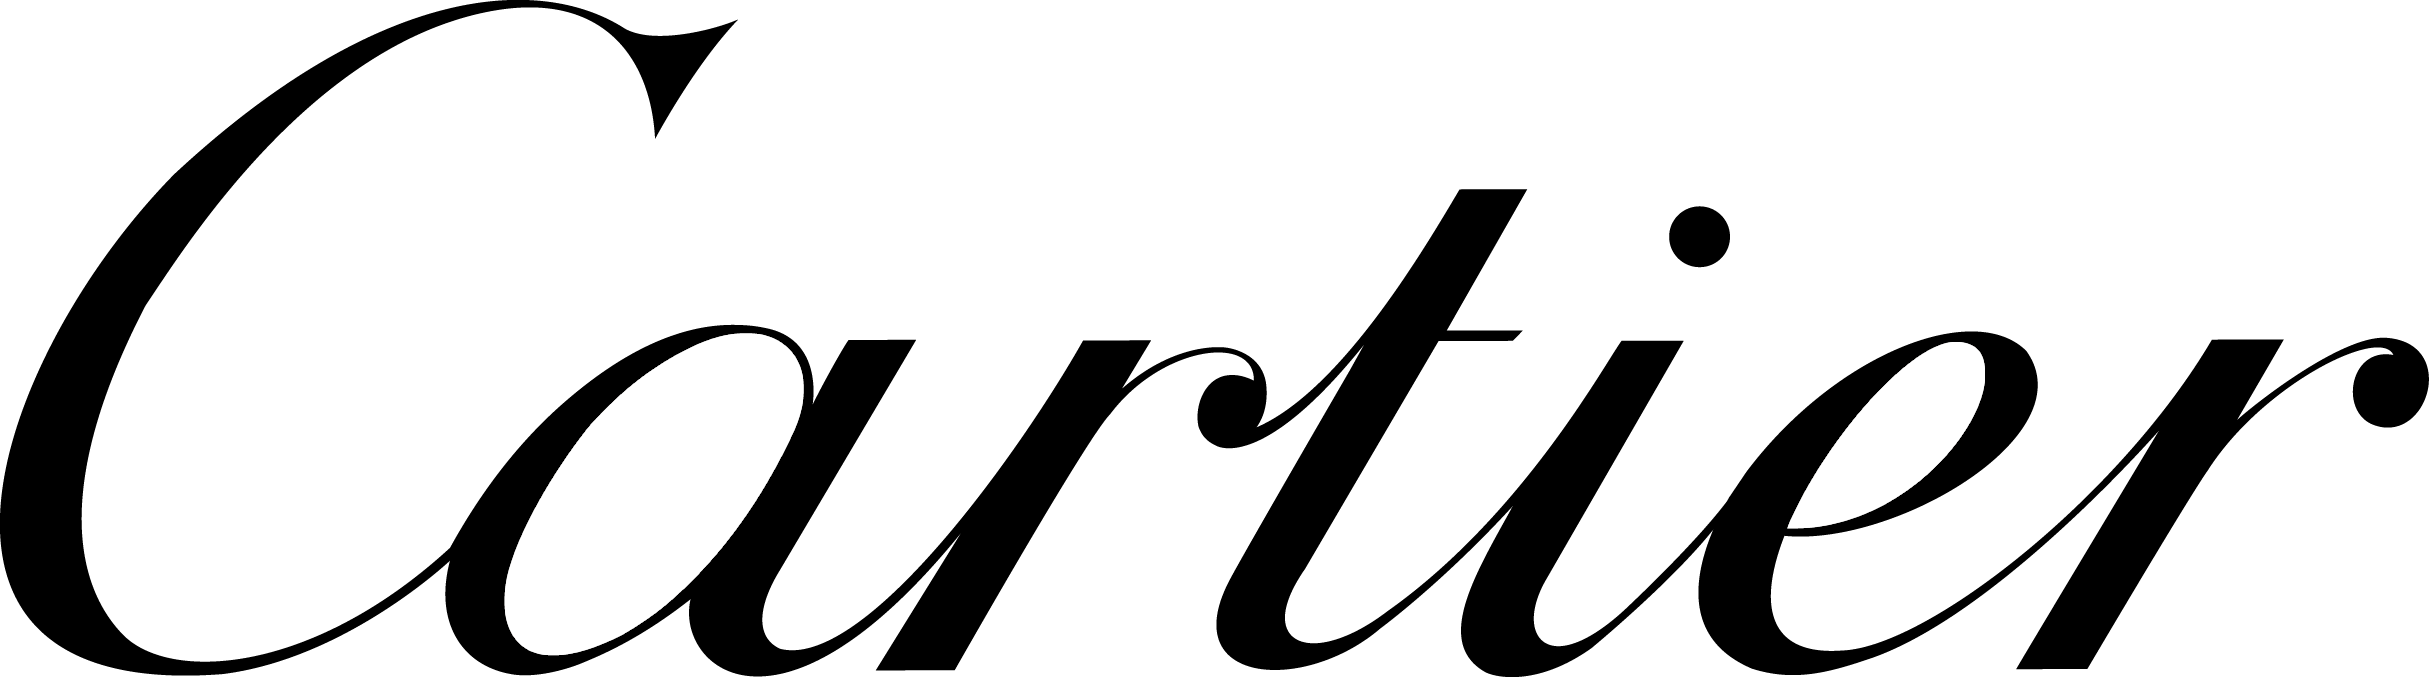 cartier logo vector free